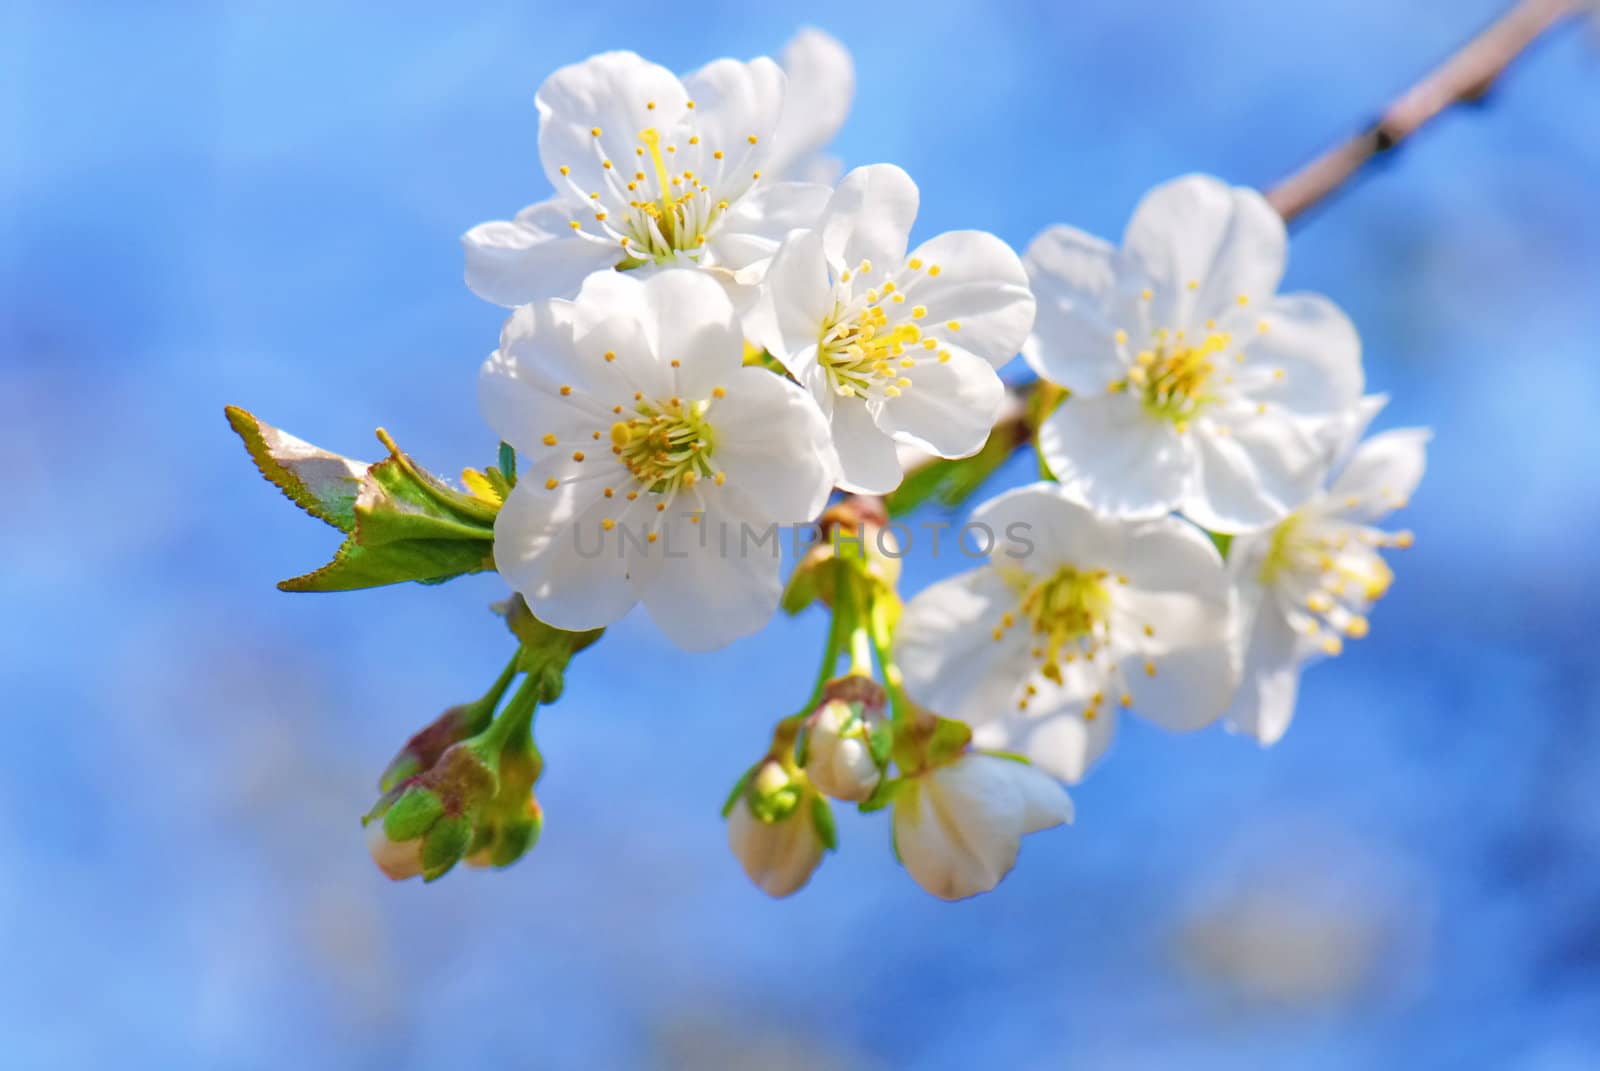 Plum tree flowers in bloom against blue sky